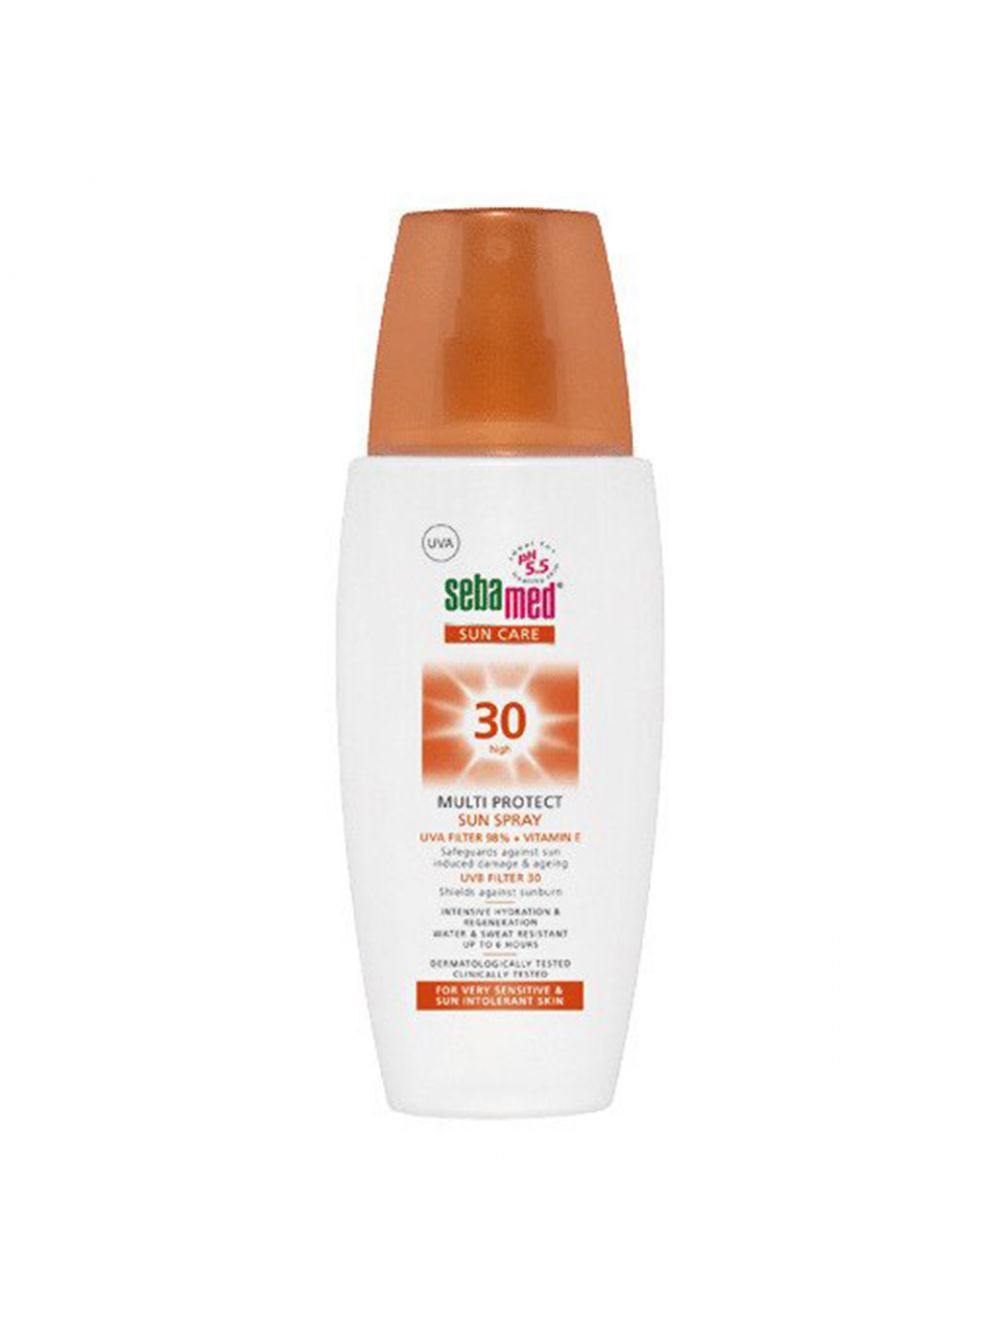 Sebamed 30 High Multiprotect Sun Spray (150ml) - Niram